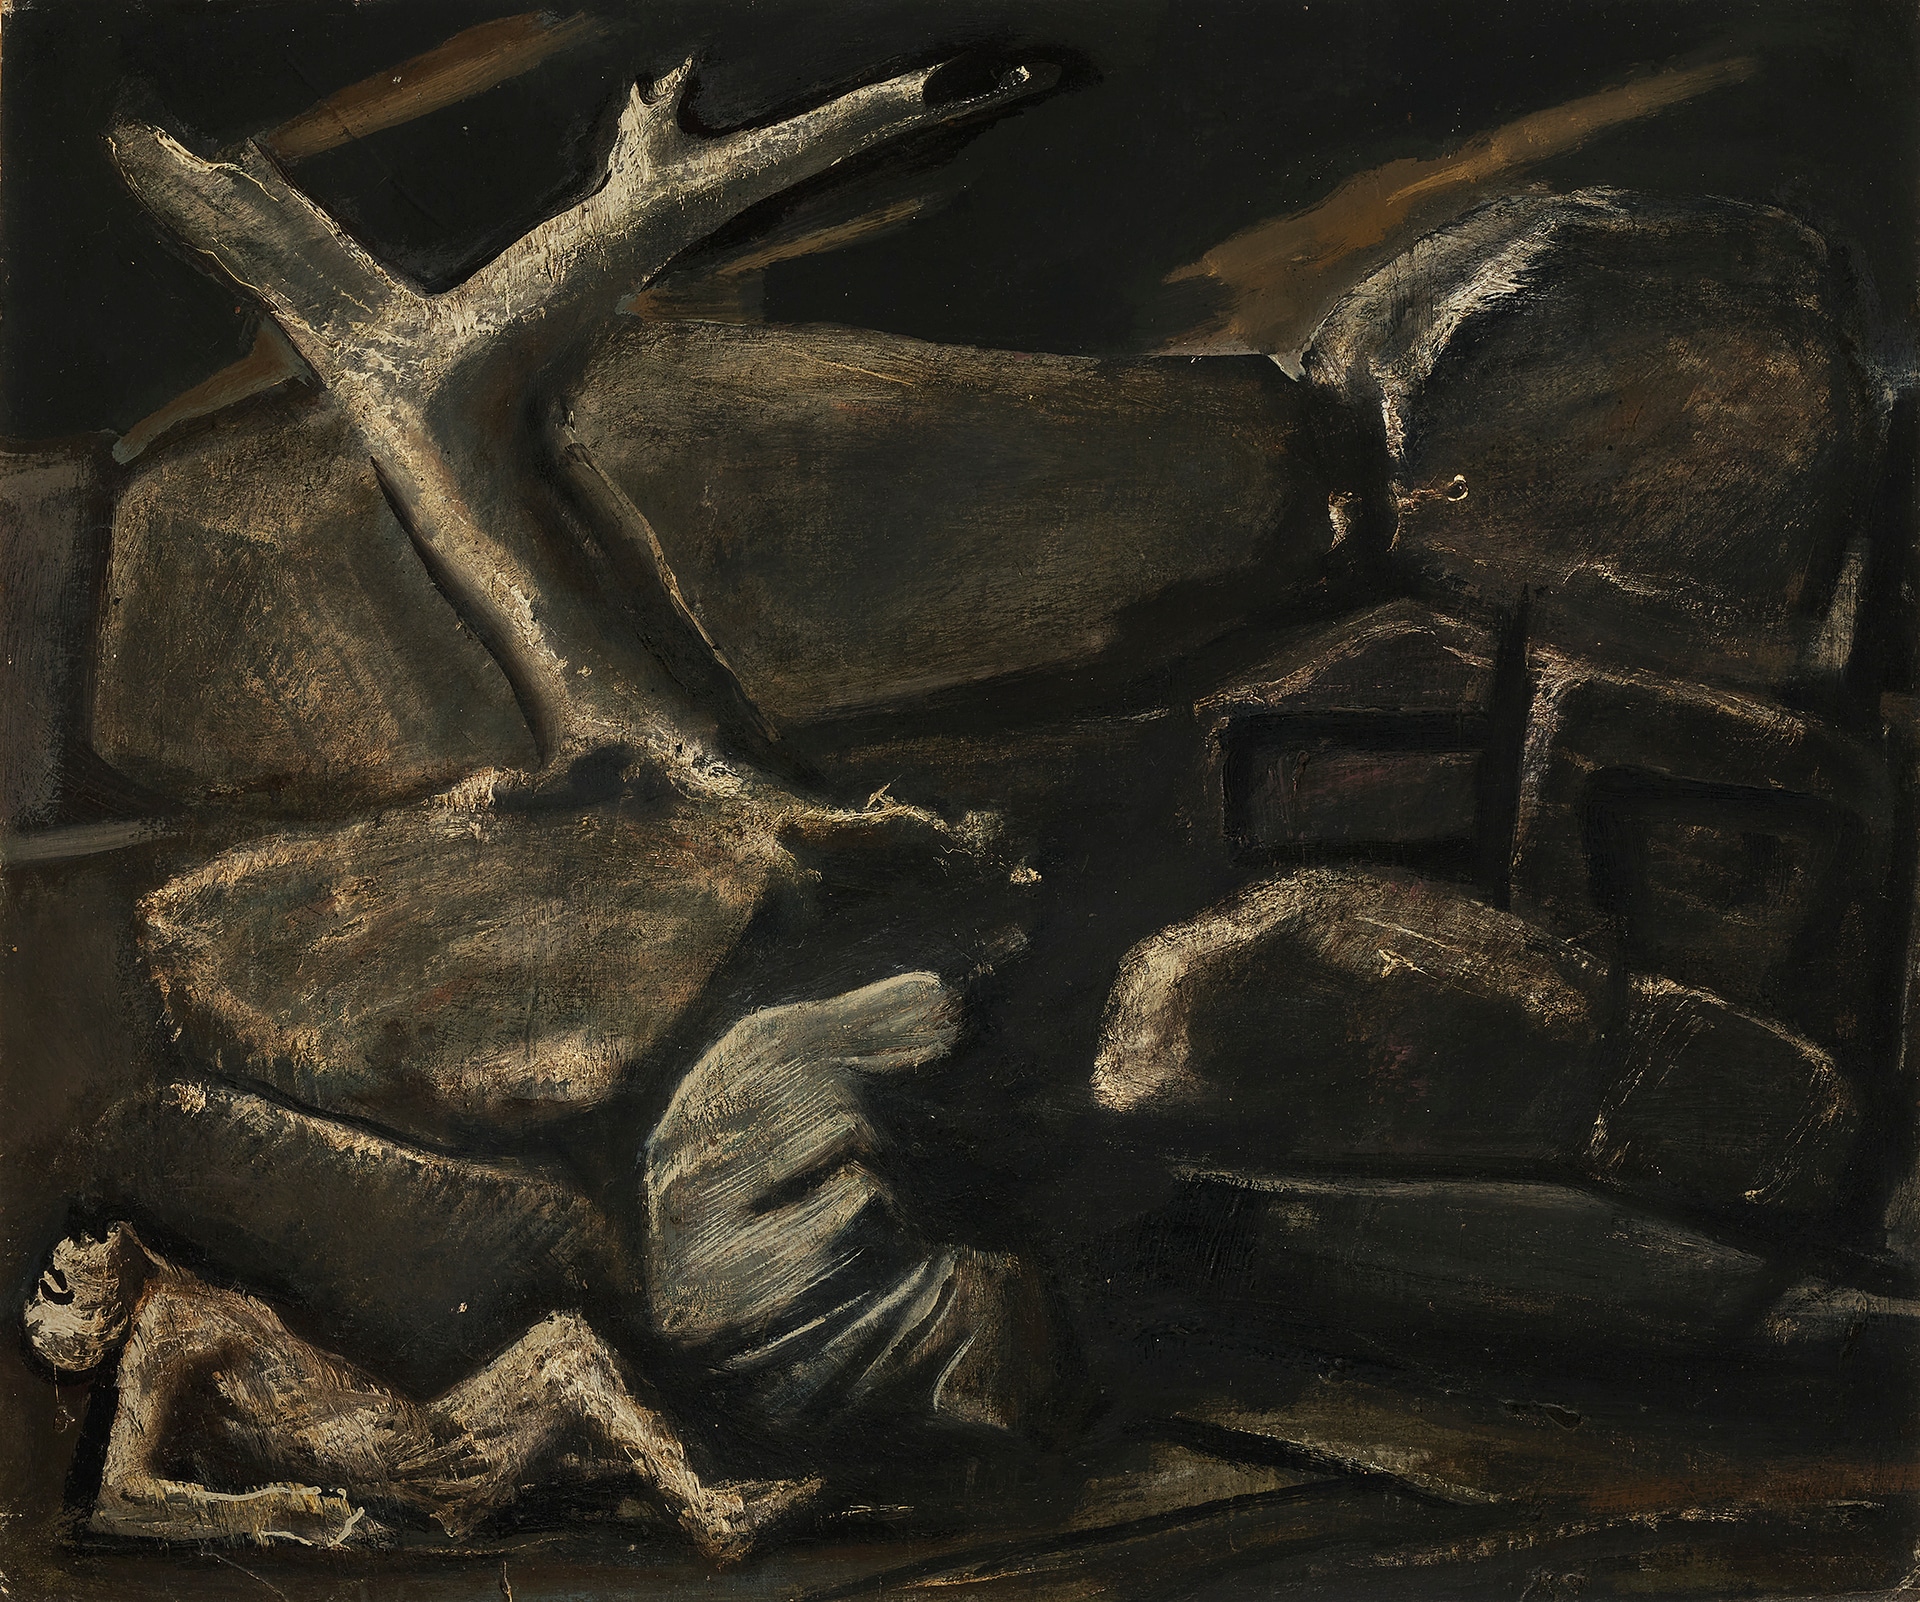 Mario Sironi: Lazzaro, 1946, olio su cartone telato, 50 x 60 cm, collezione privata © Mario Sironi, by SIAE 2021 